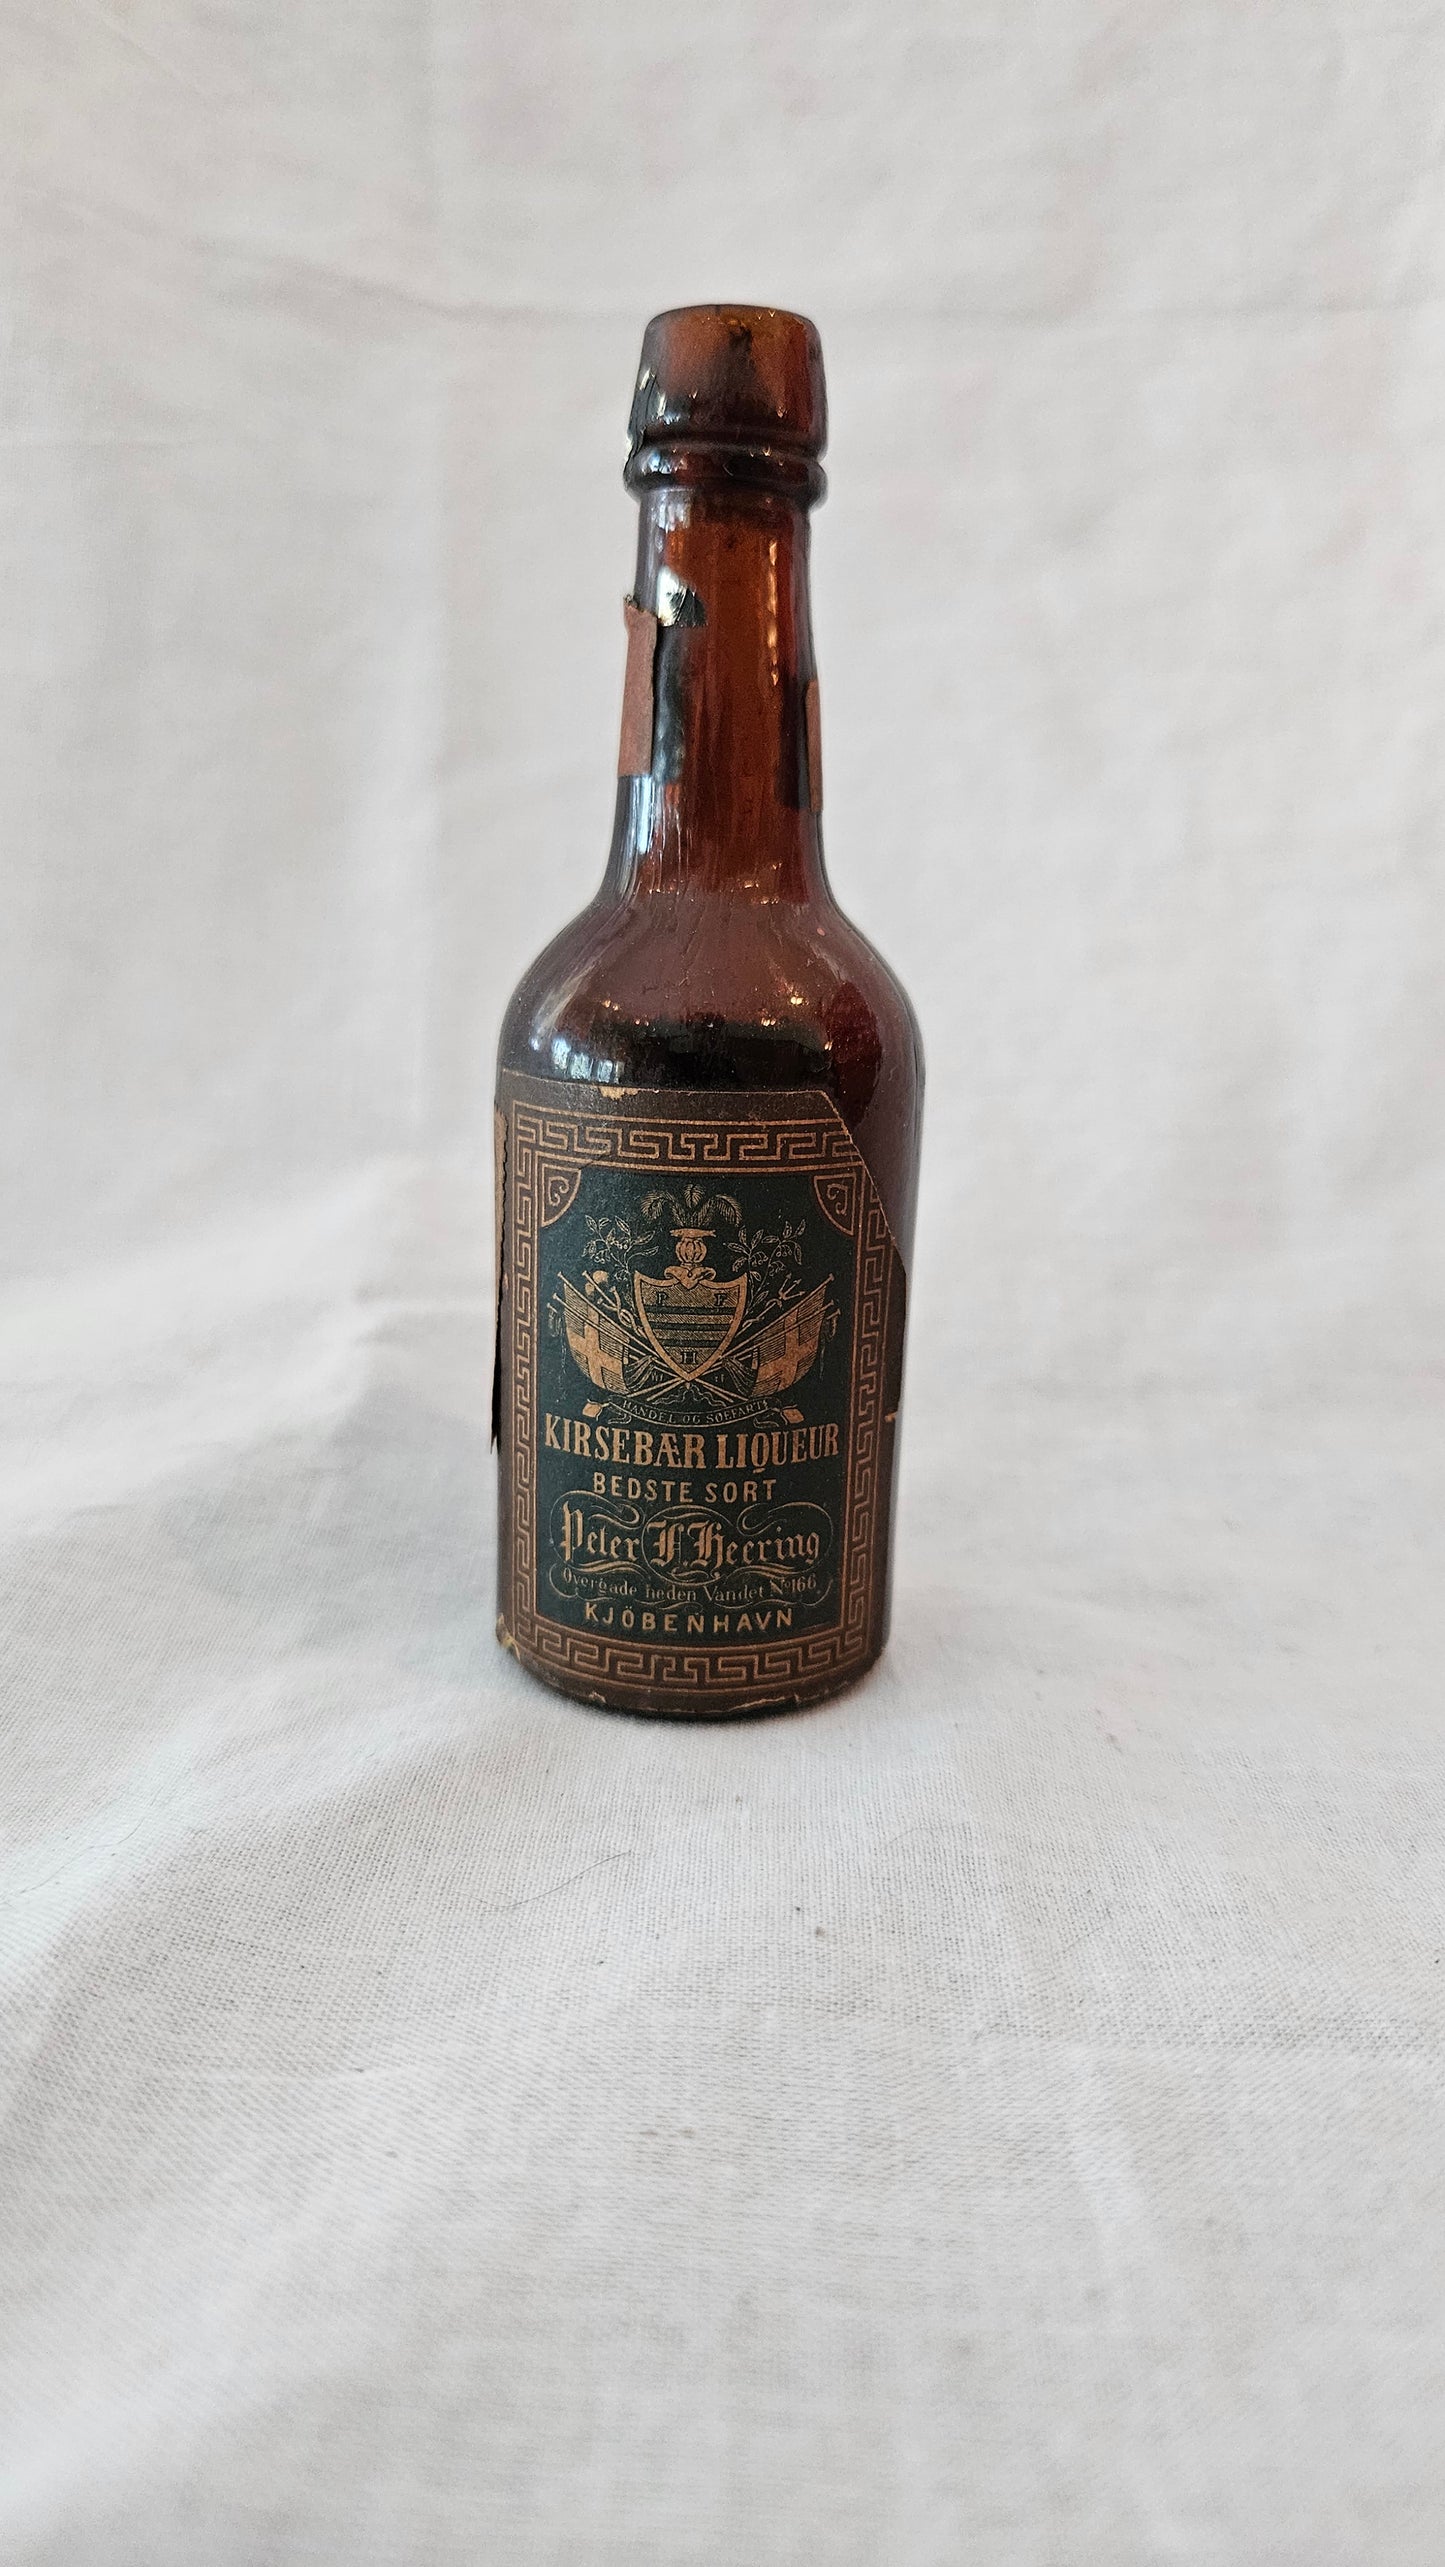 Vintage Miniature Liquor Bottle - Peter F. Heering - Copenhagen, Denmark